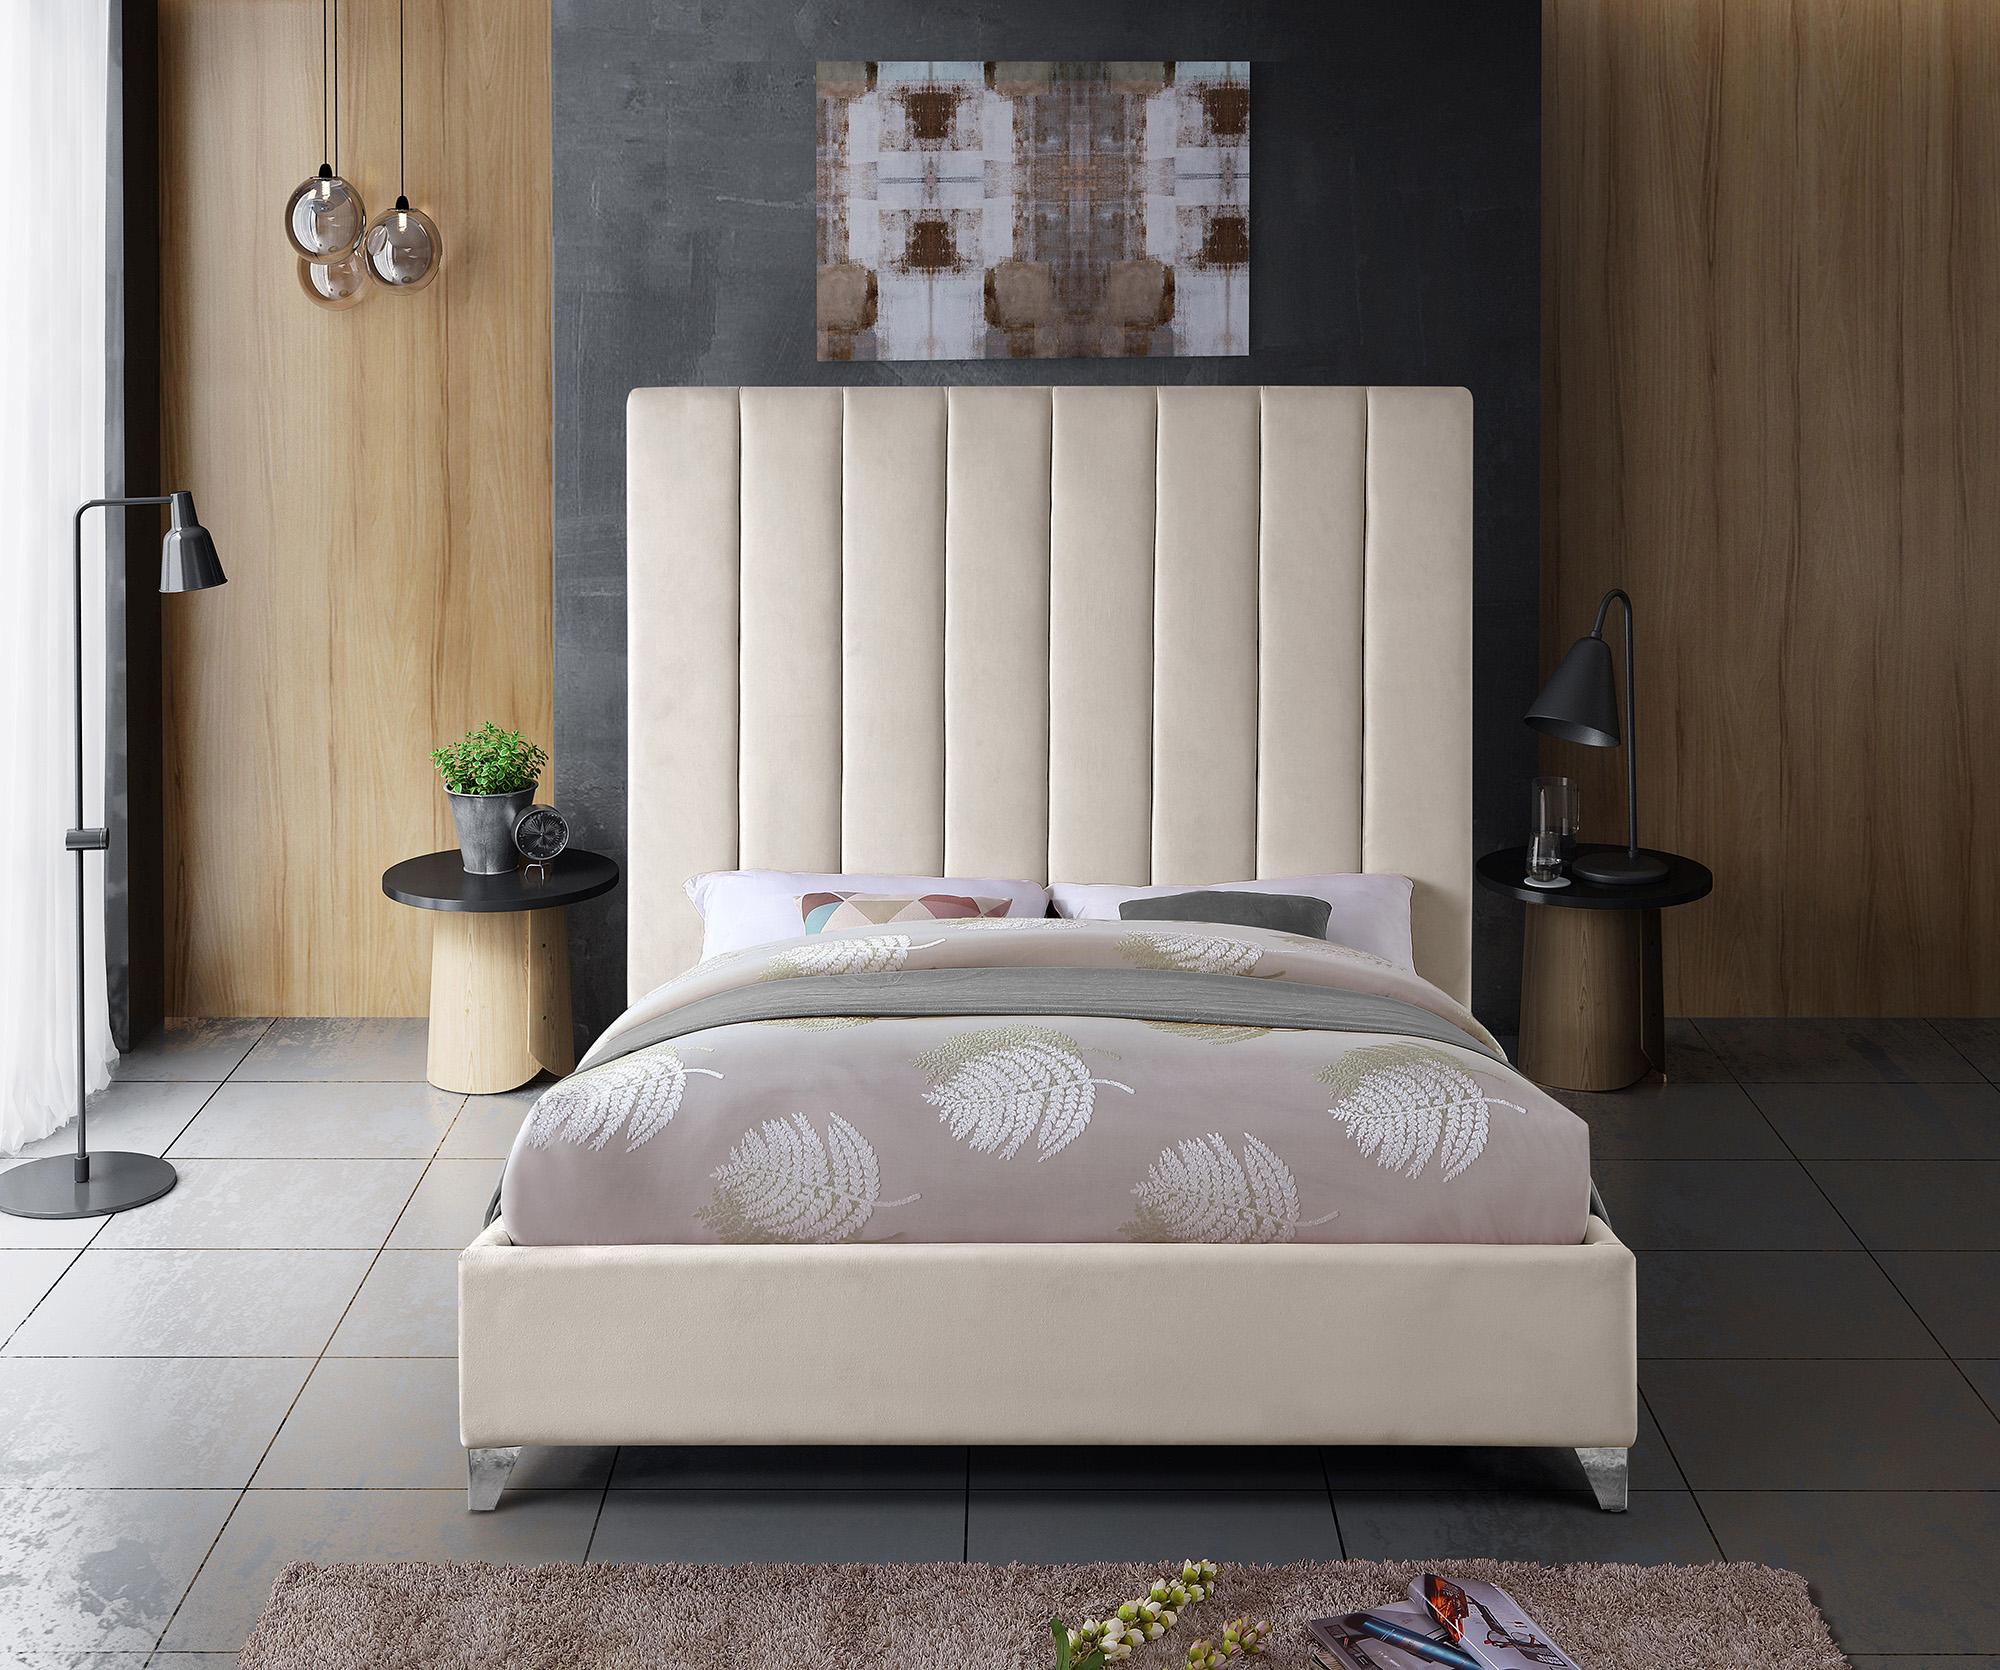 

    
Meridian Furniture VIA ViaCream-Q Platform Bed Cream ViaCream-Q
